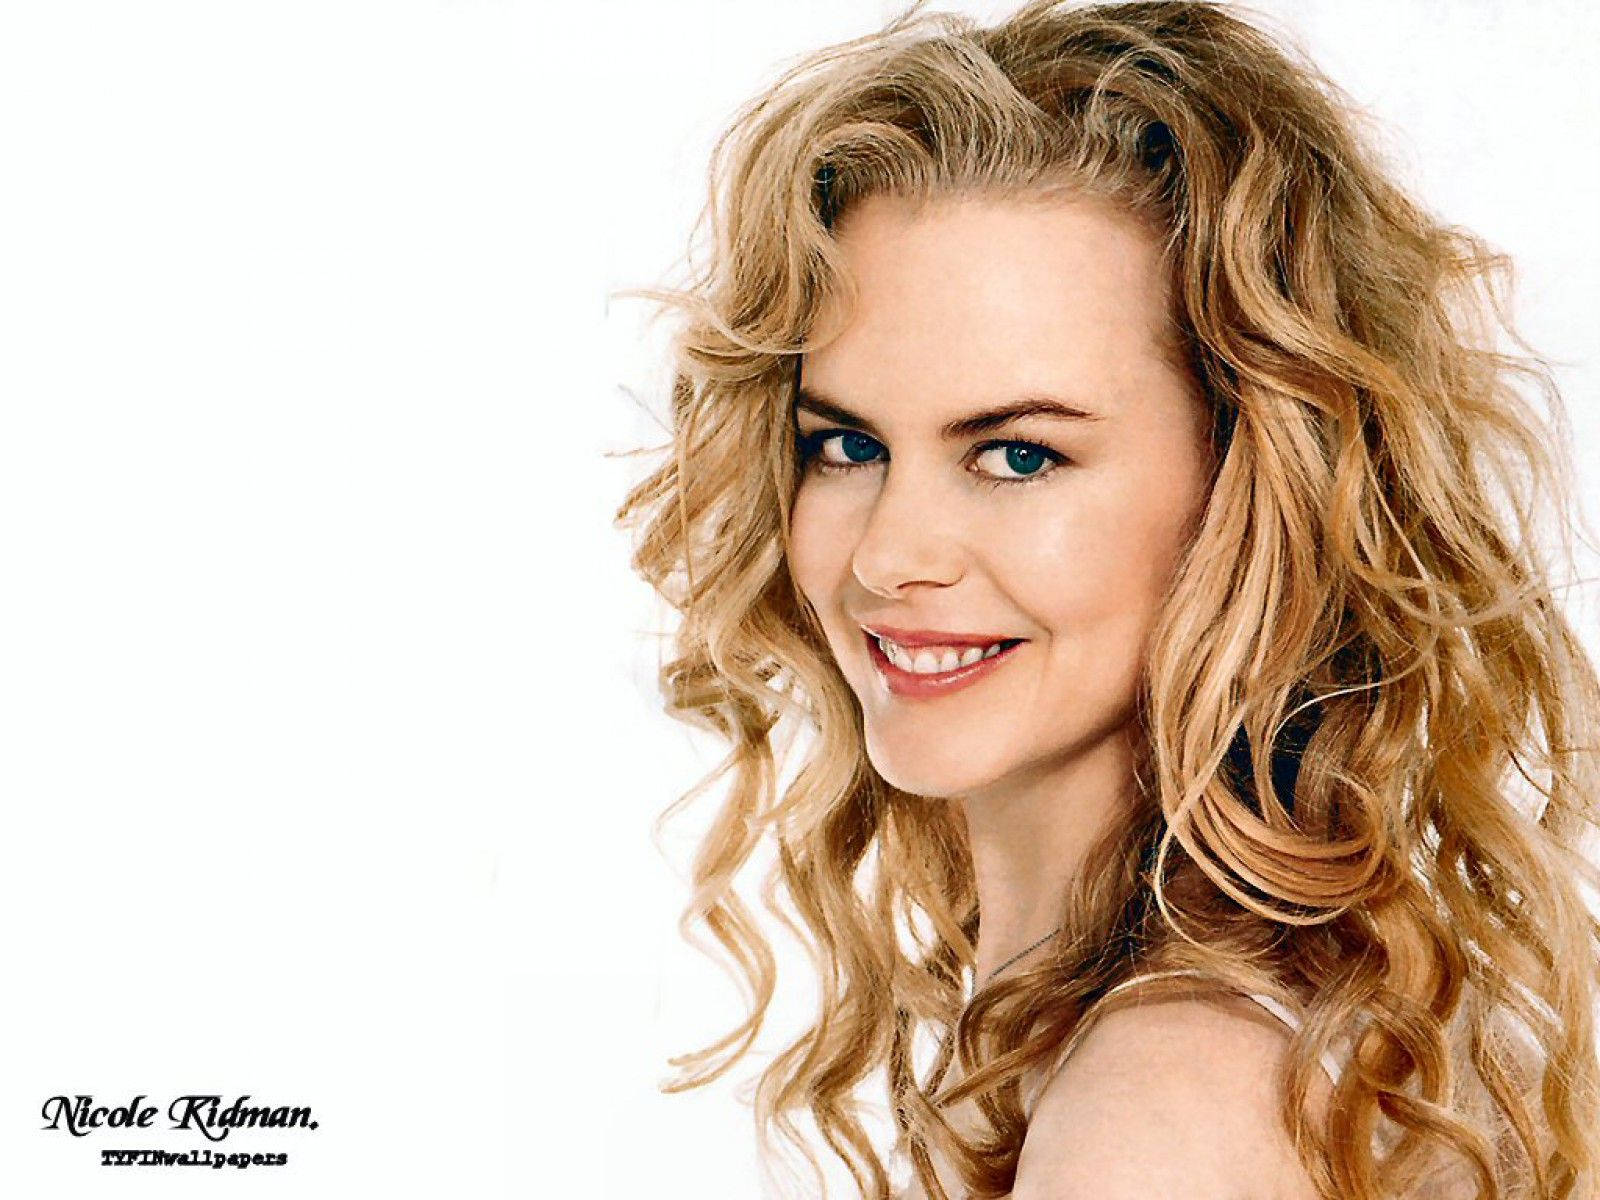 Nicole Kidman - An Award Winning Actress Wallpaper